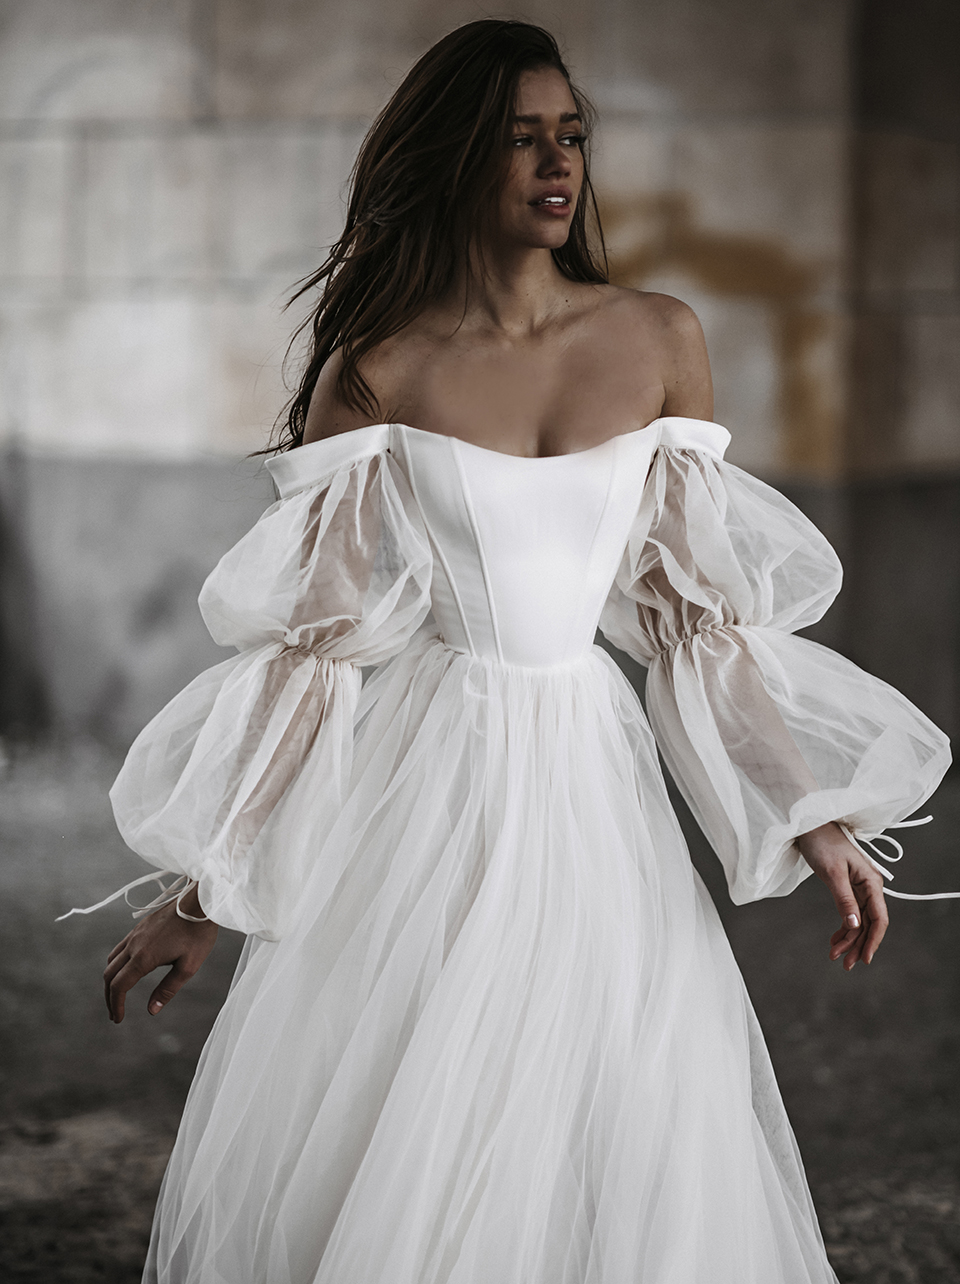 Mimi by Galia Lahav Bridal Musings Editors Favorite Wedding Dresses 2021 2022 Brides Claire Eliza Christina Castello 1 - 20 chiếc váy cưới đẹp nhất theo biên tập viên của chúng tôi